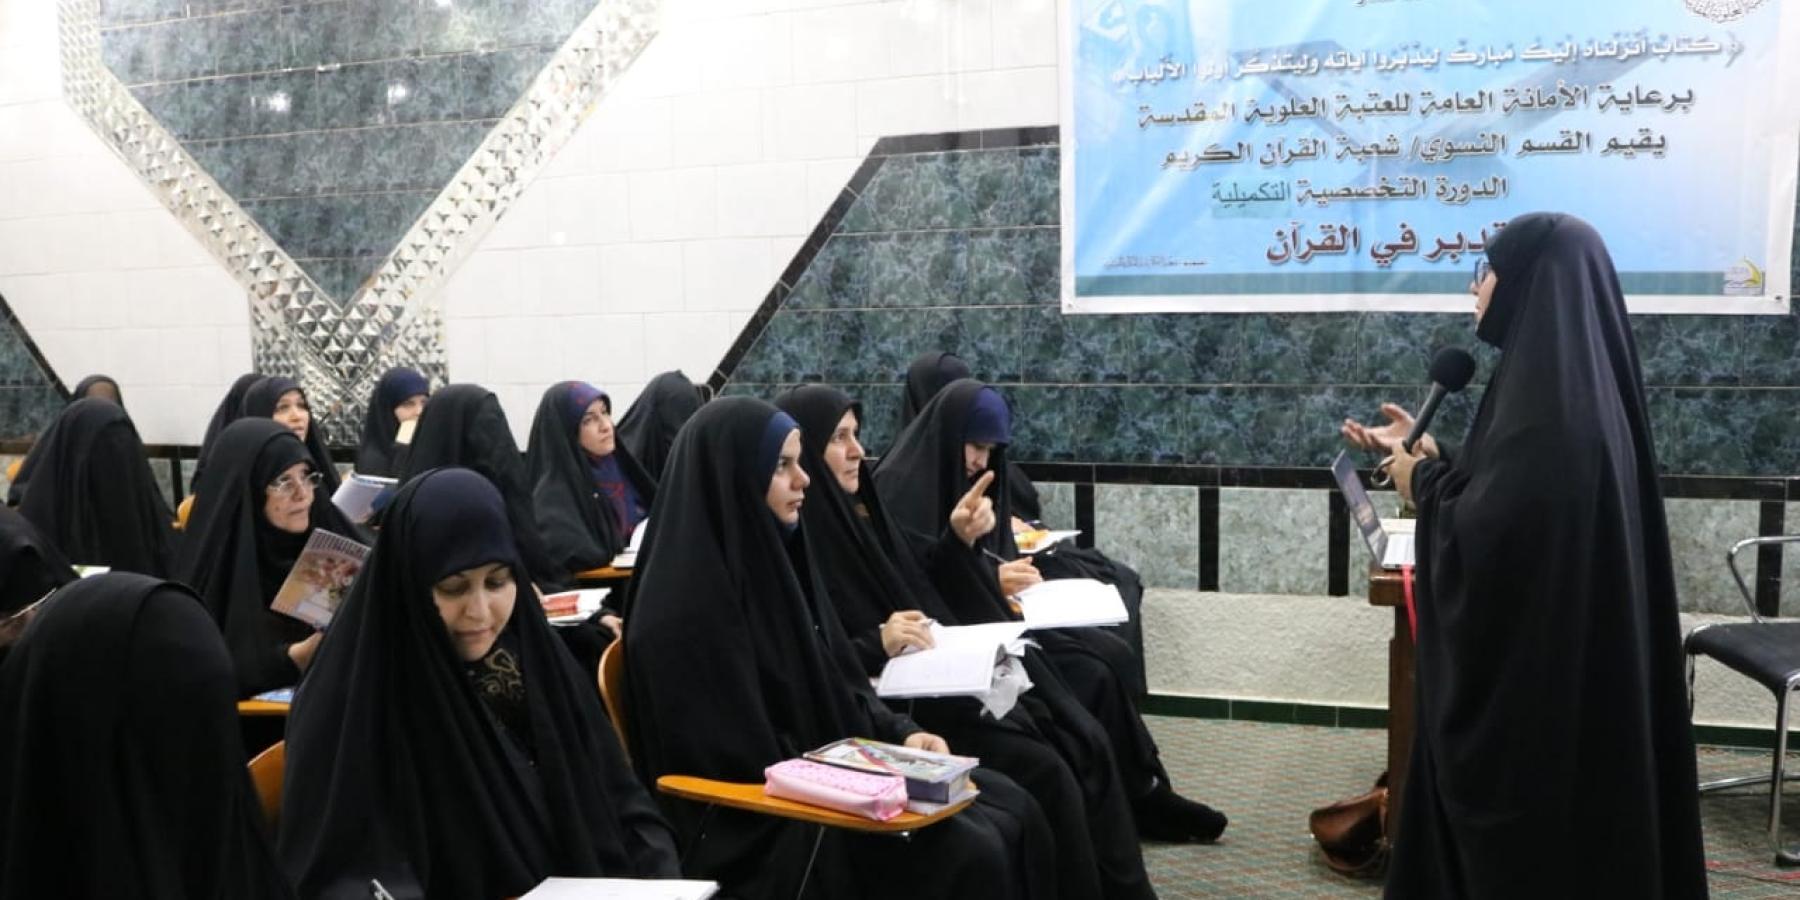 معهد الكوثر القرآني النسوي التابع للعتبة العلوية يقيم دورة في التدبر القرآني